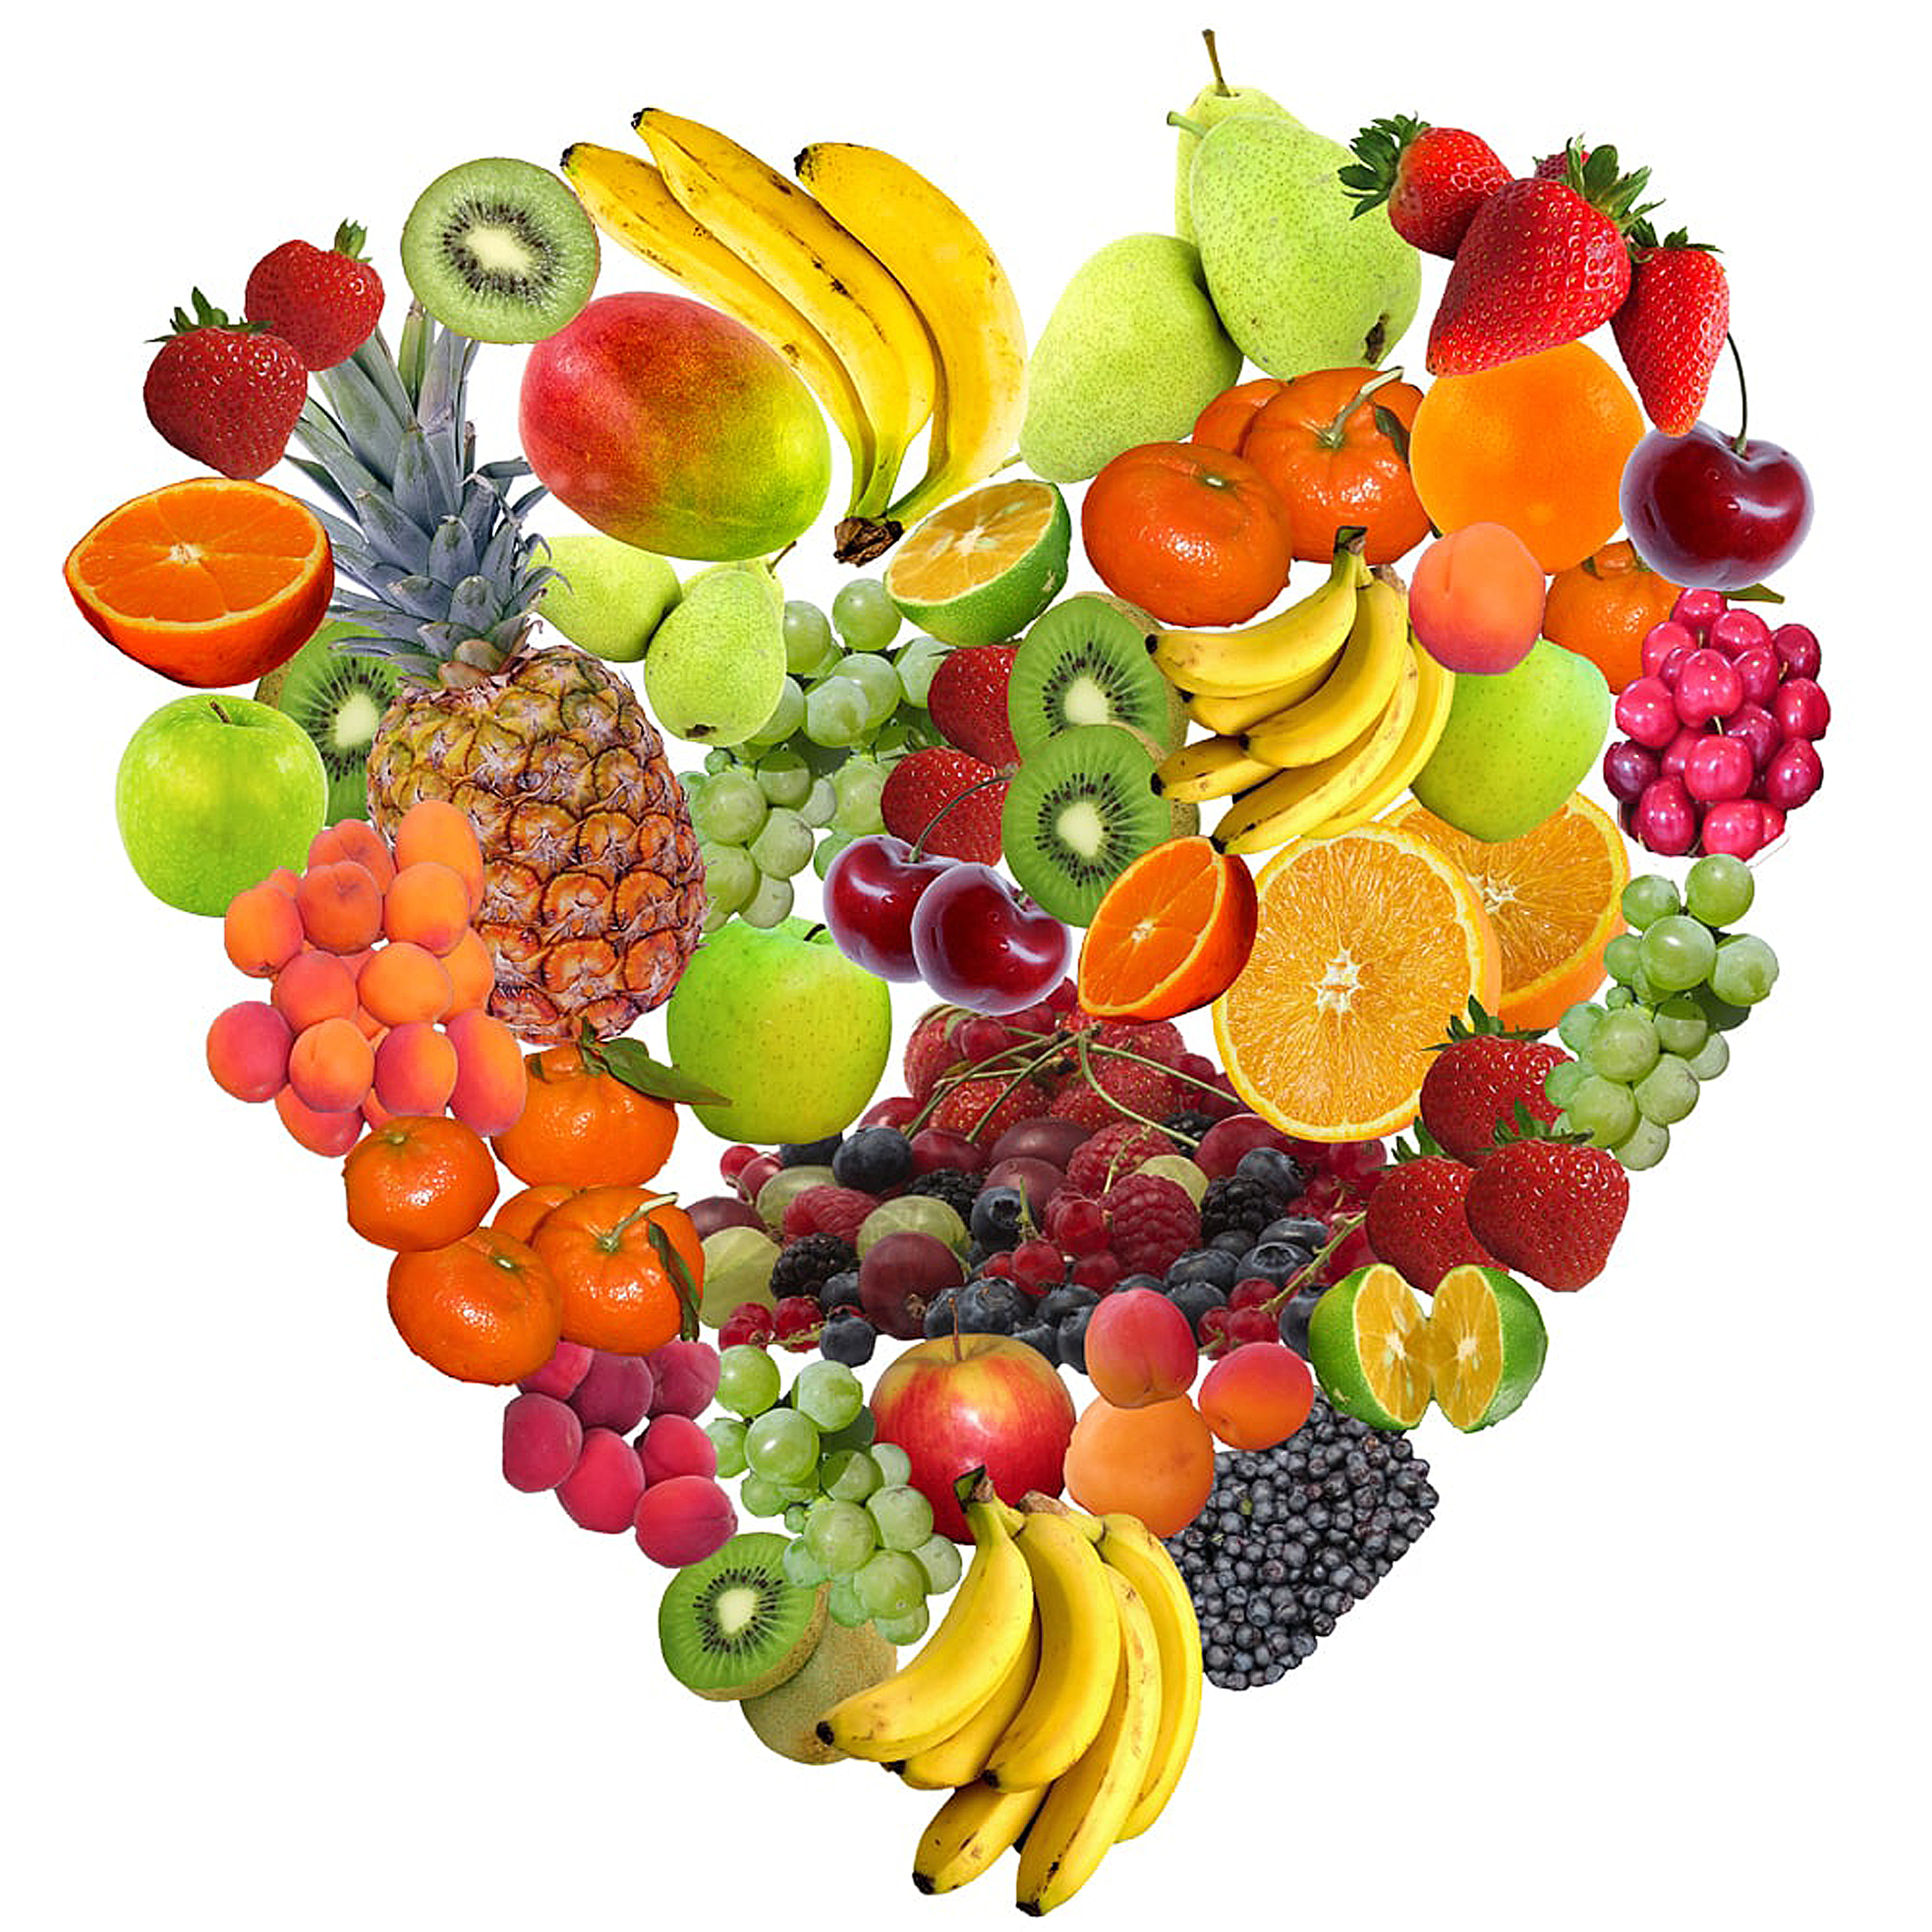 Manger des fruits et des légumes tous les jours pour une alimentation saine.